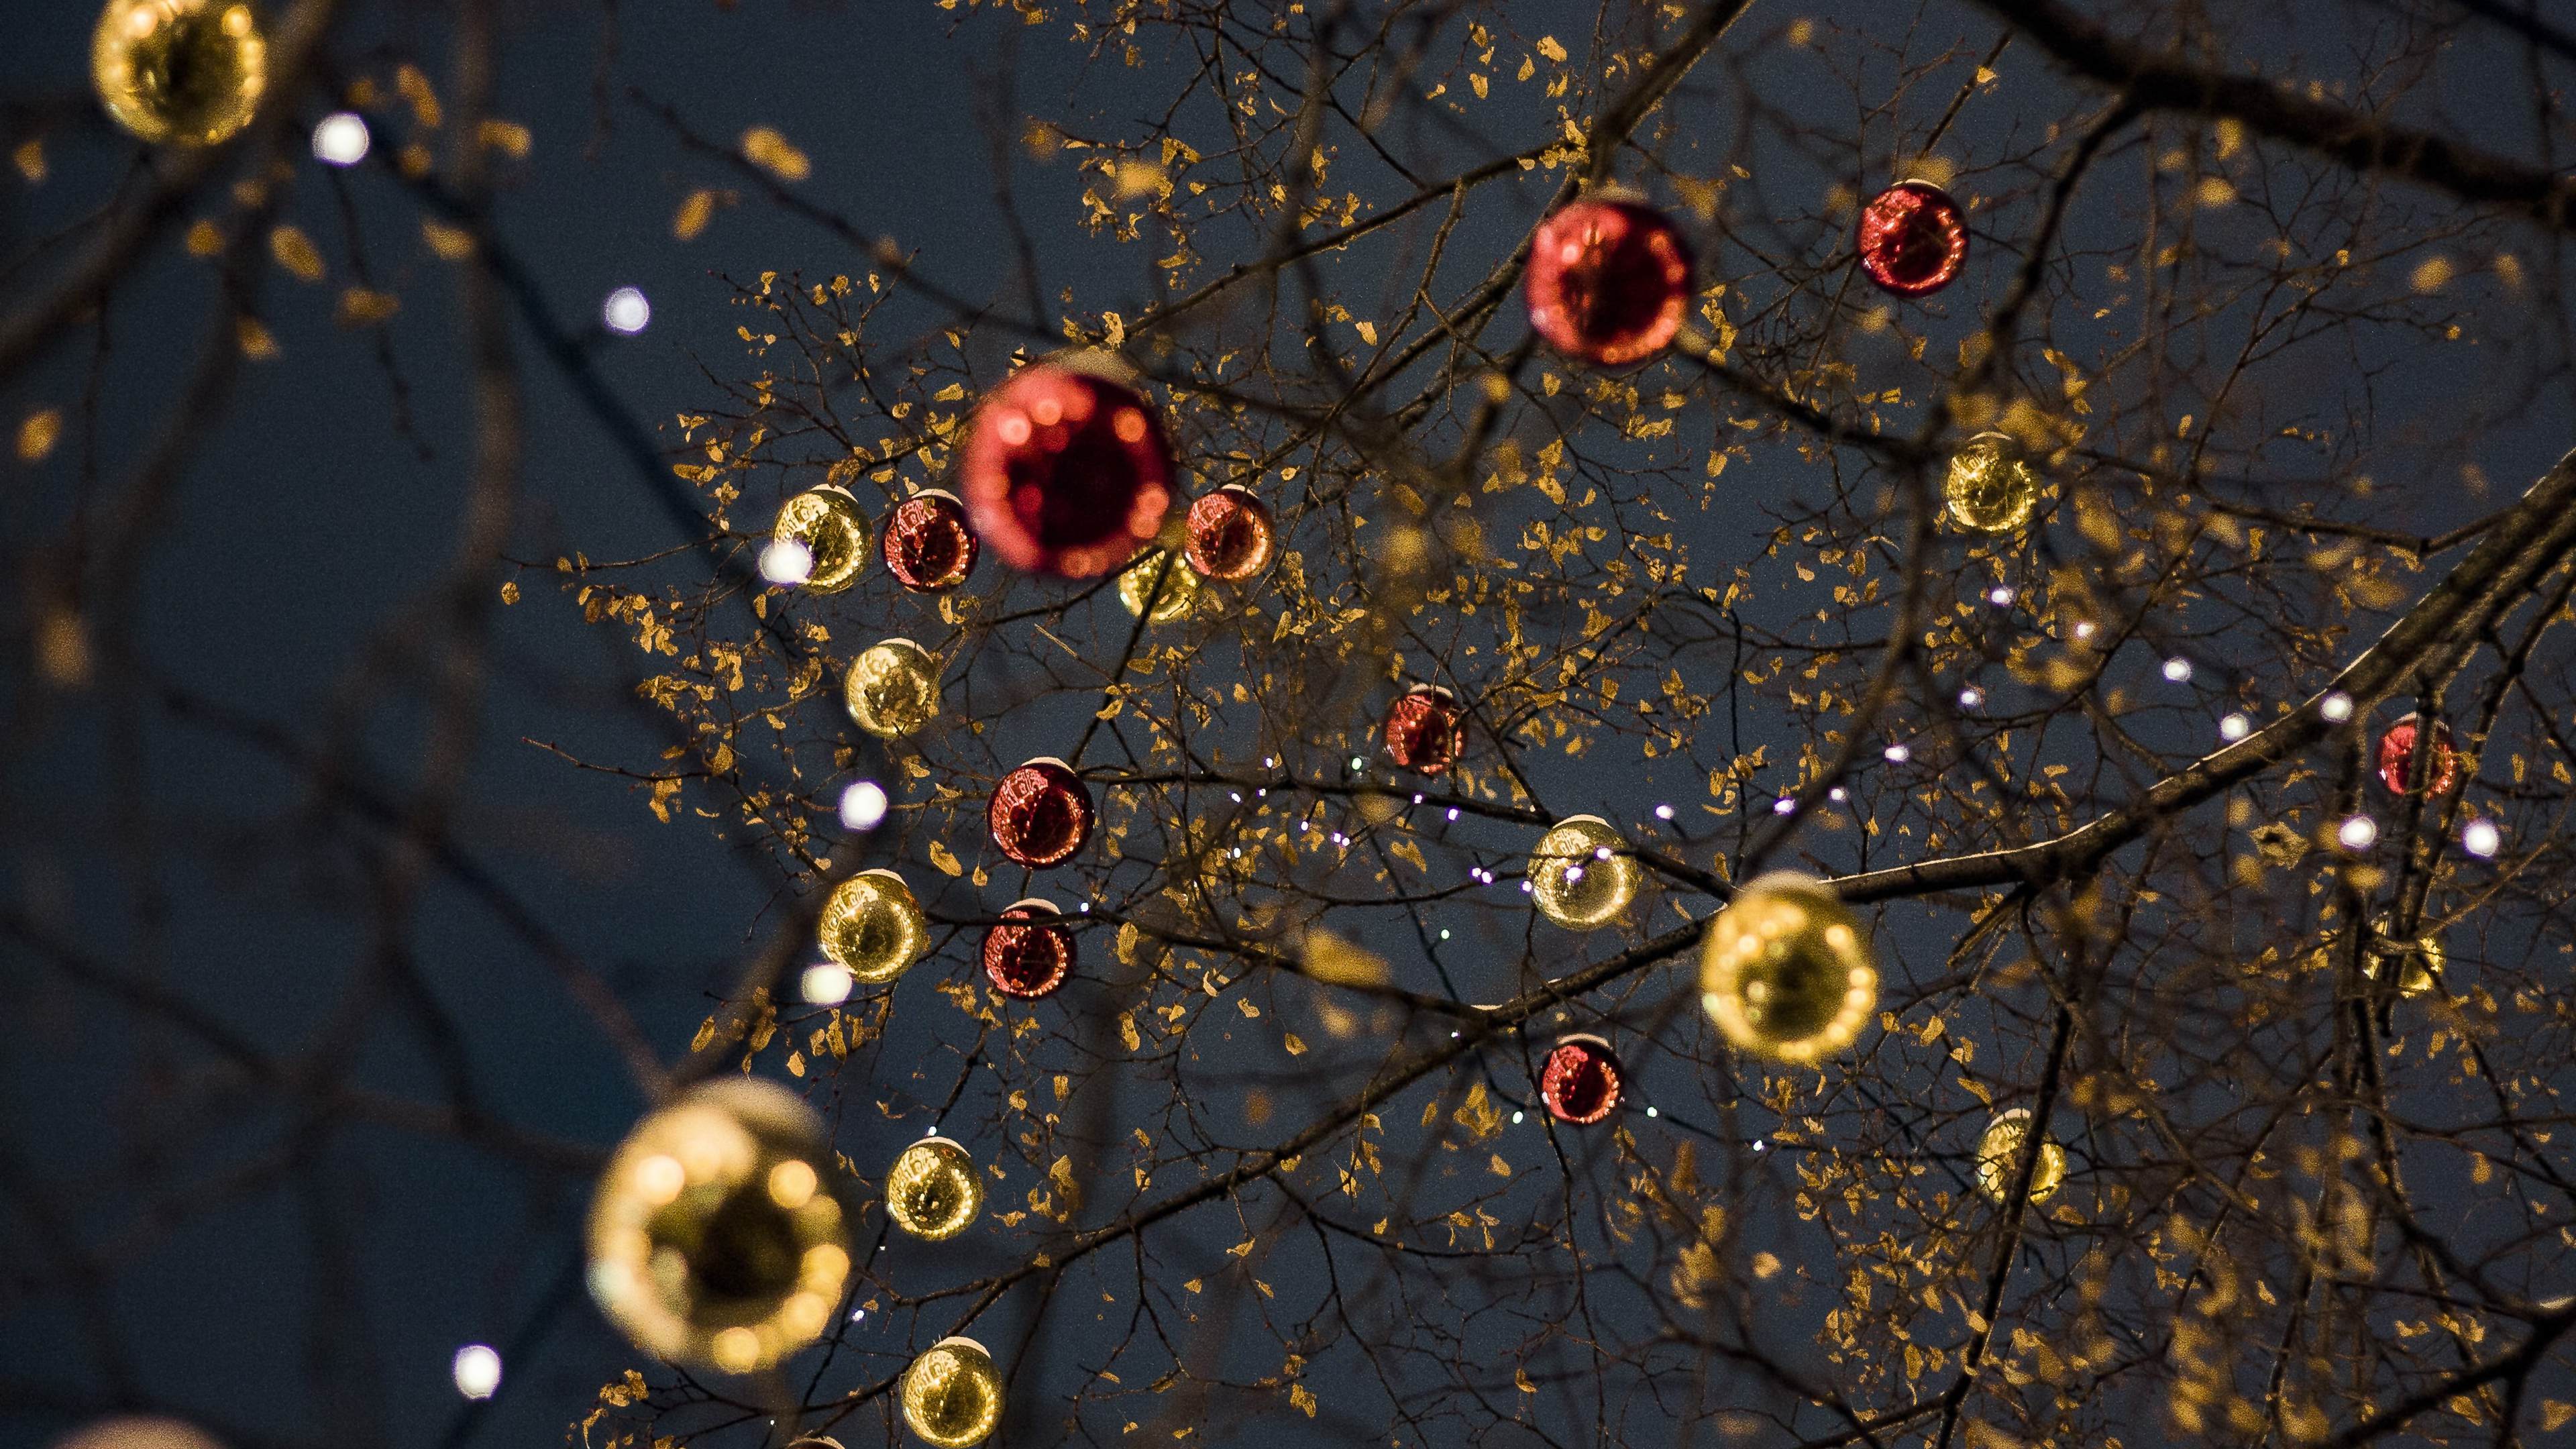 十二月 圣诞节庆典树 灯 球等装饰物唯美壁纸图片 <span style='color:red;'>烘托气氛</span>的